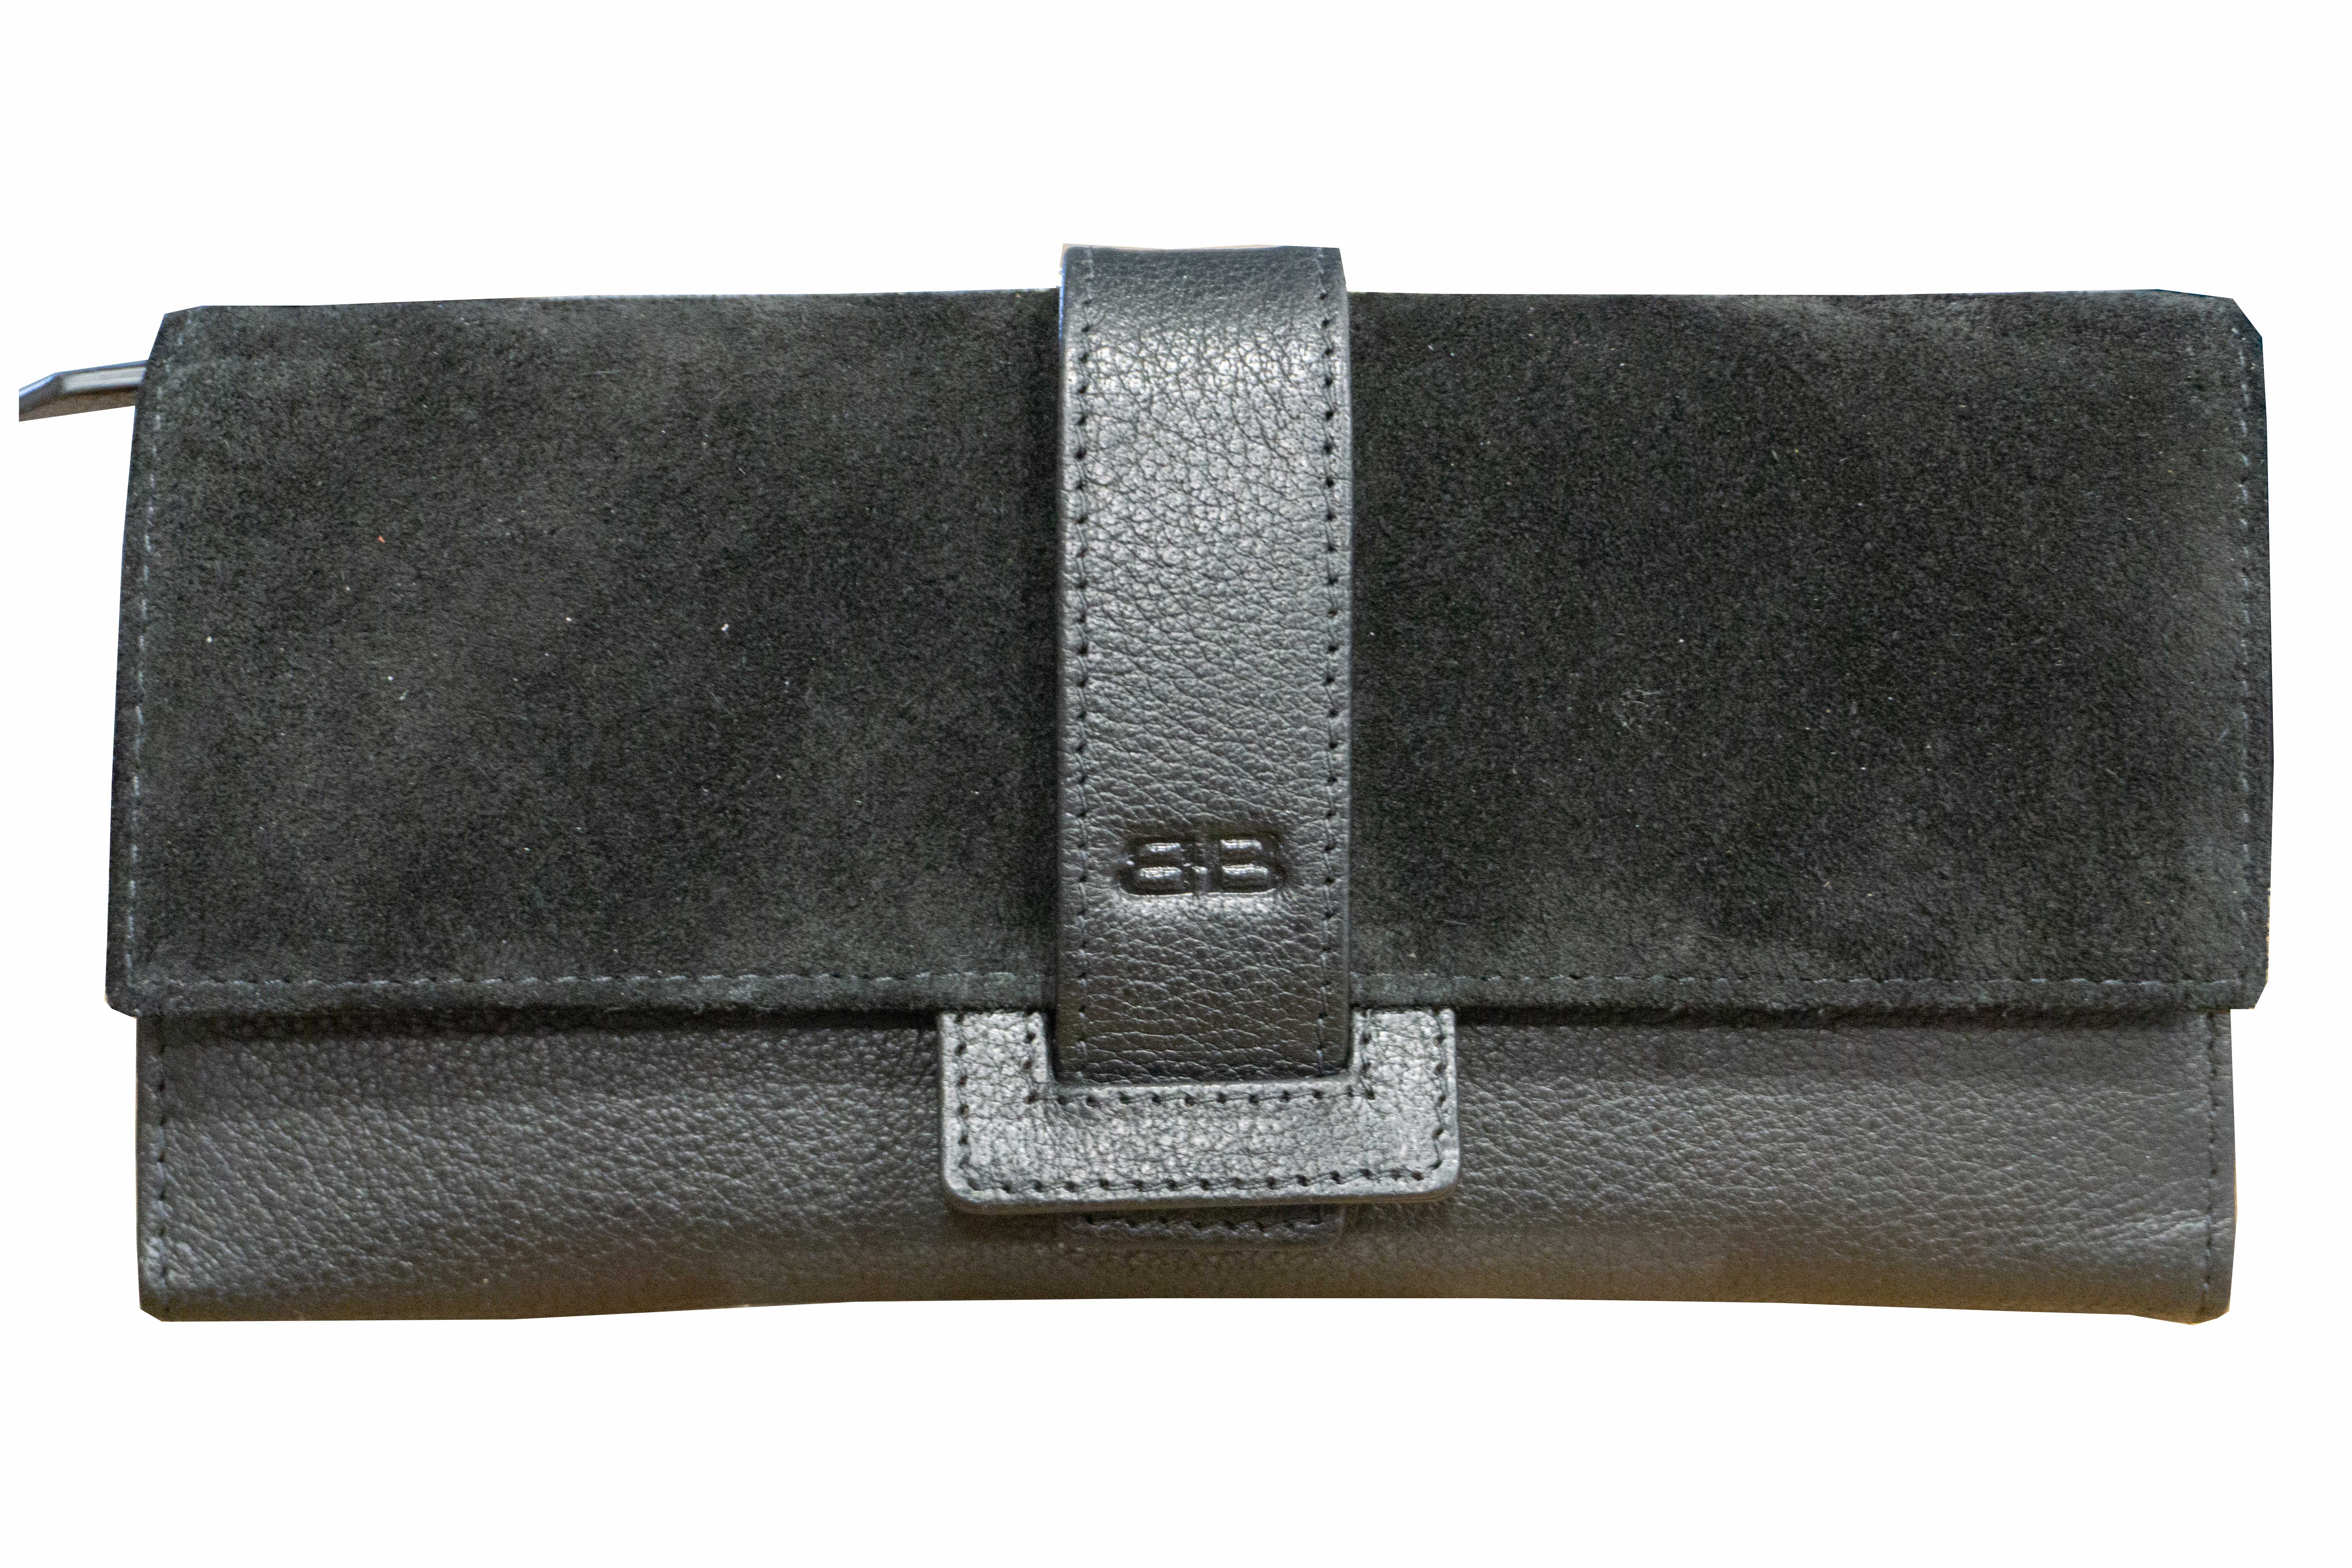 Damenbörse mit Überschlag Glattleder Suede RFID in grau von Bernardo Bossi - K-230-02